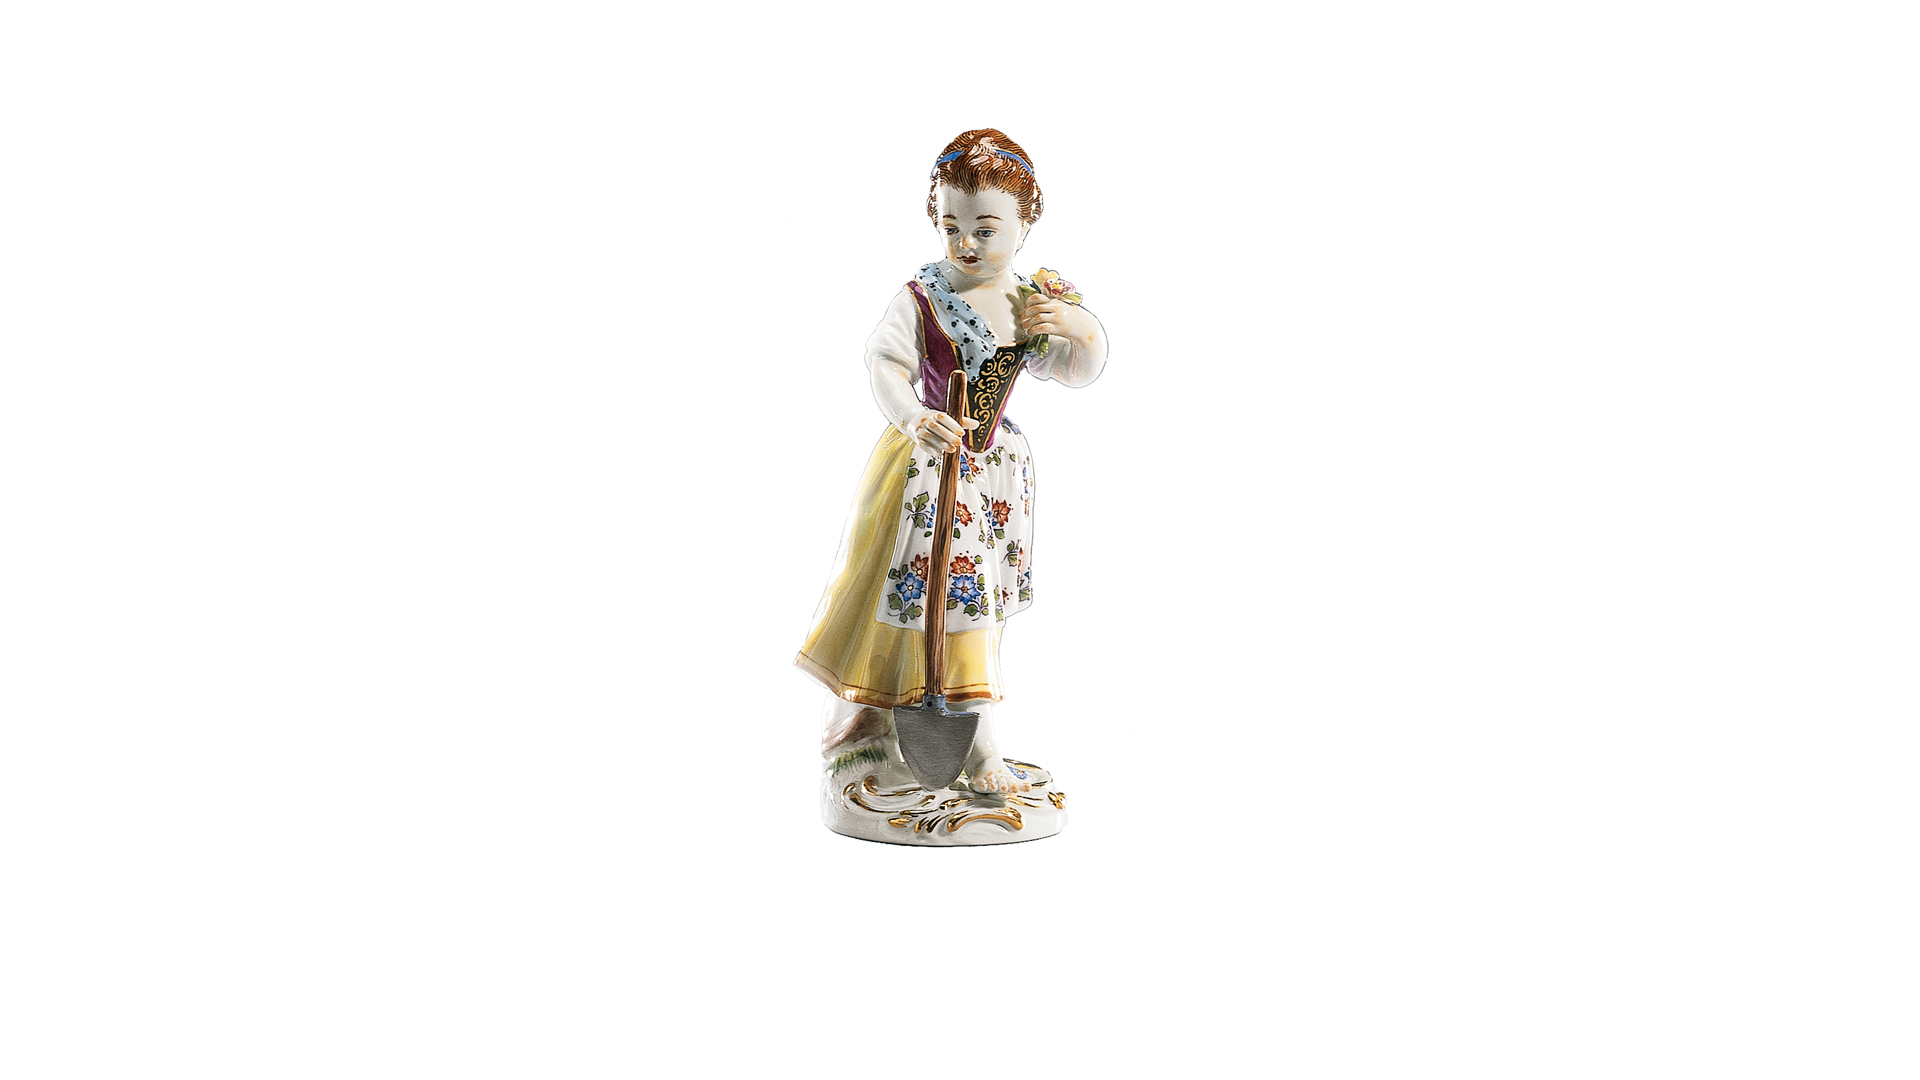 Фигурка Meissen 15,5 см Девочка с лопатой, И-ИКэндлер,1740г, пара к 60318